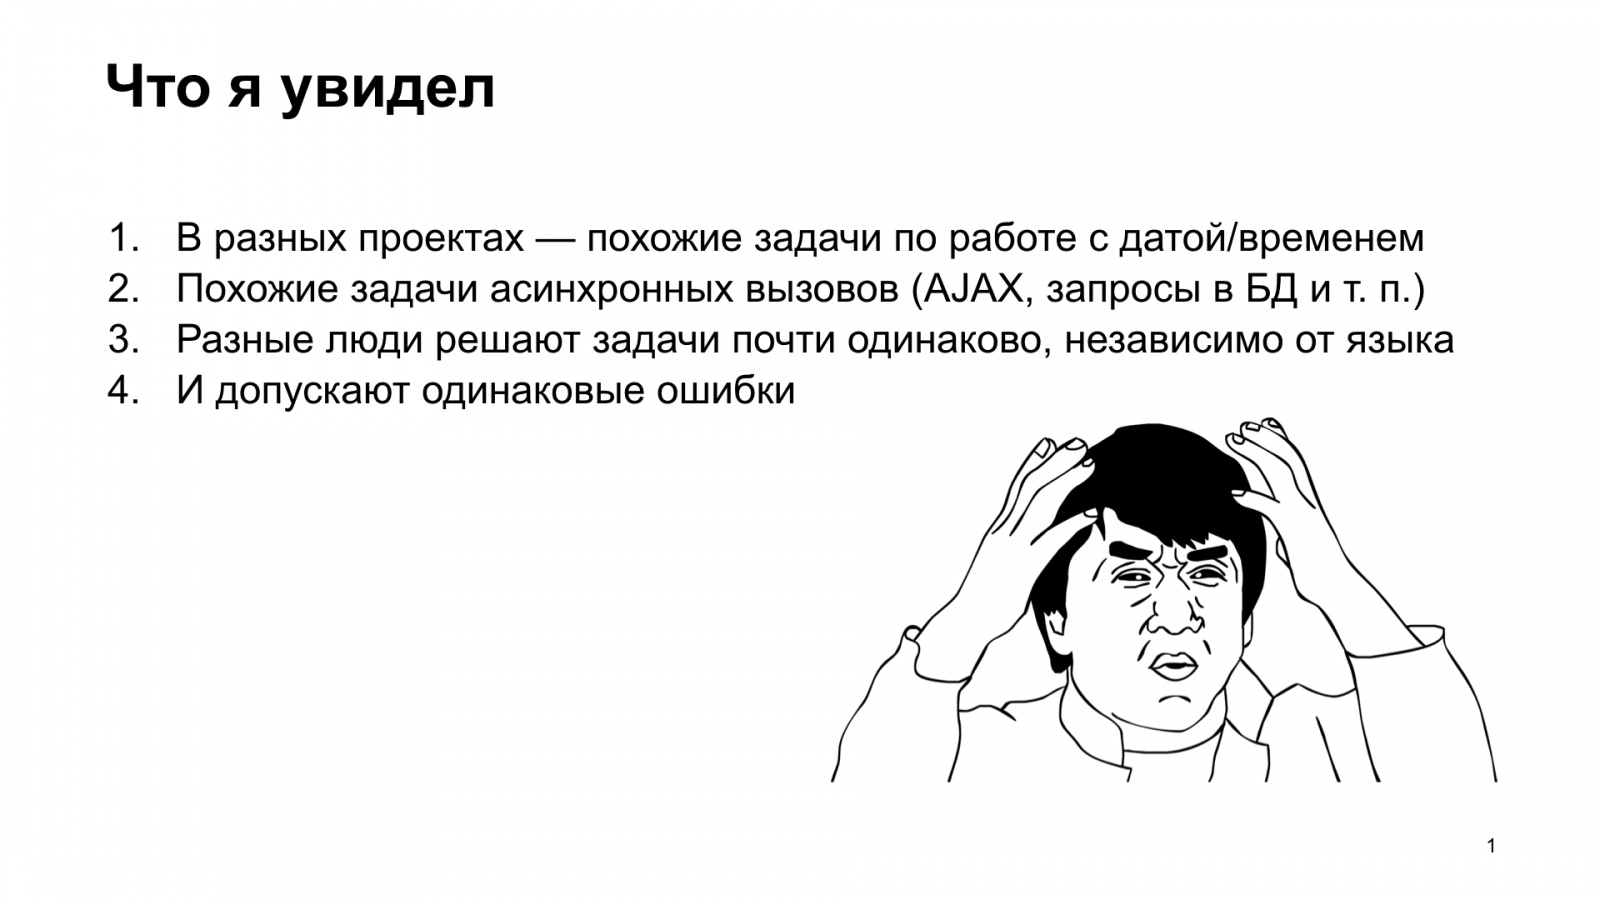 Тяжёлое бремя времени. Доклад Яндекса о типичных ошибках в работе со временем - 2